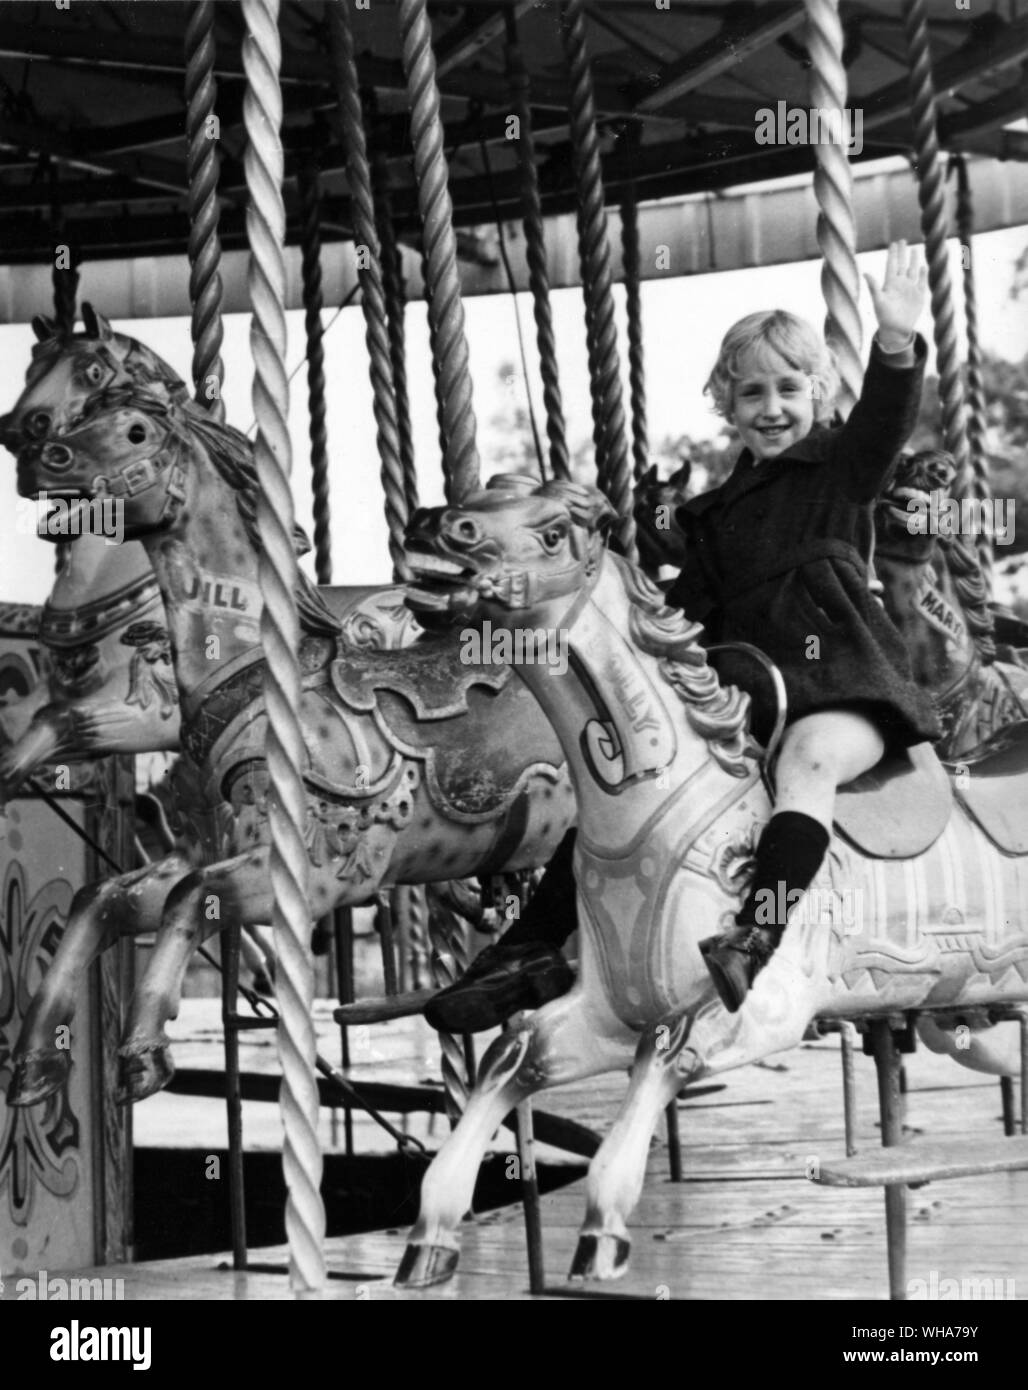 Una niña alegre en un merry go round en una feria de atracciones Foto de stock